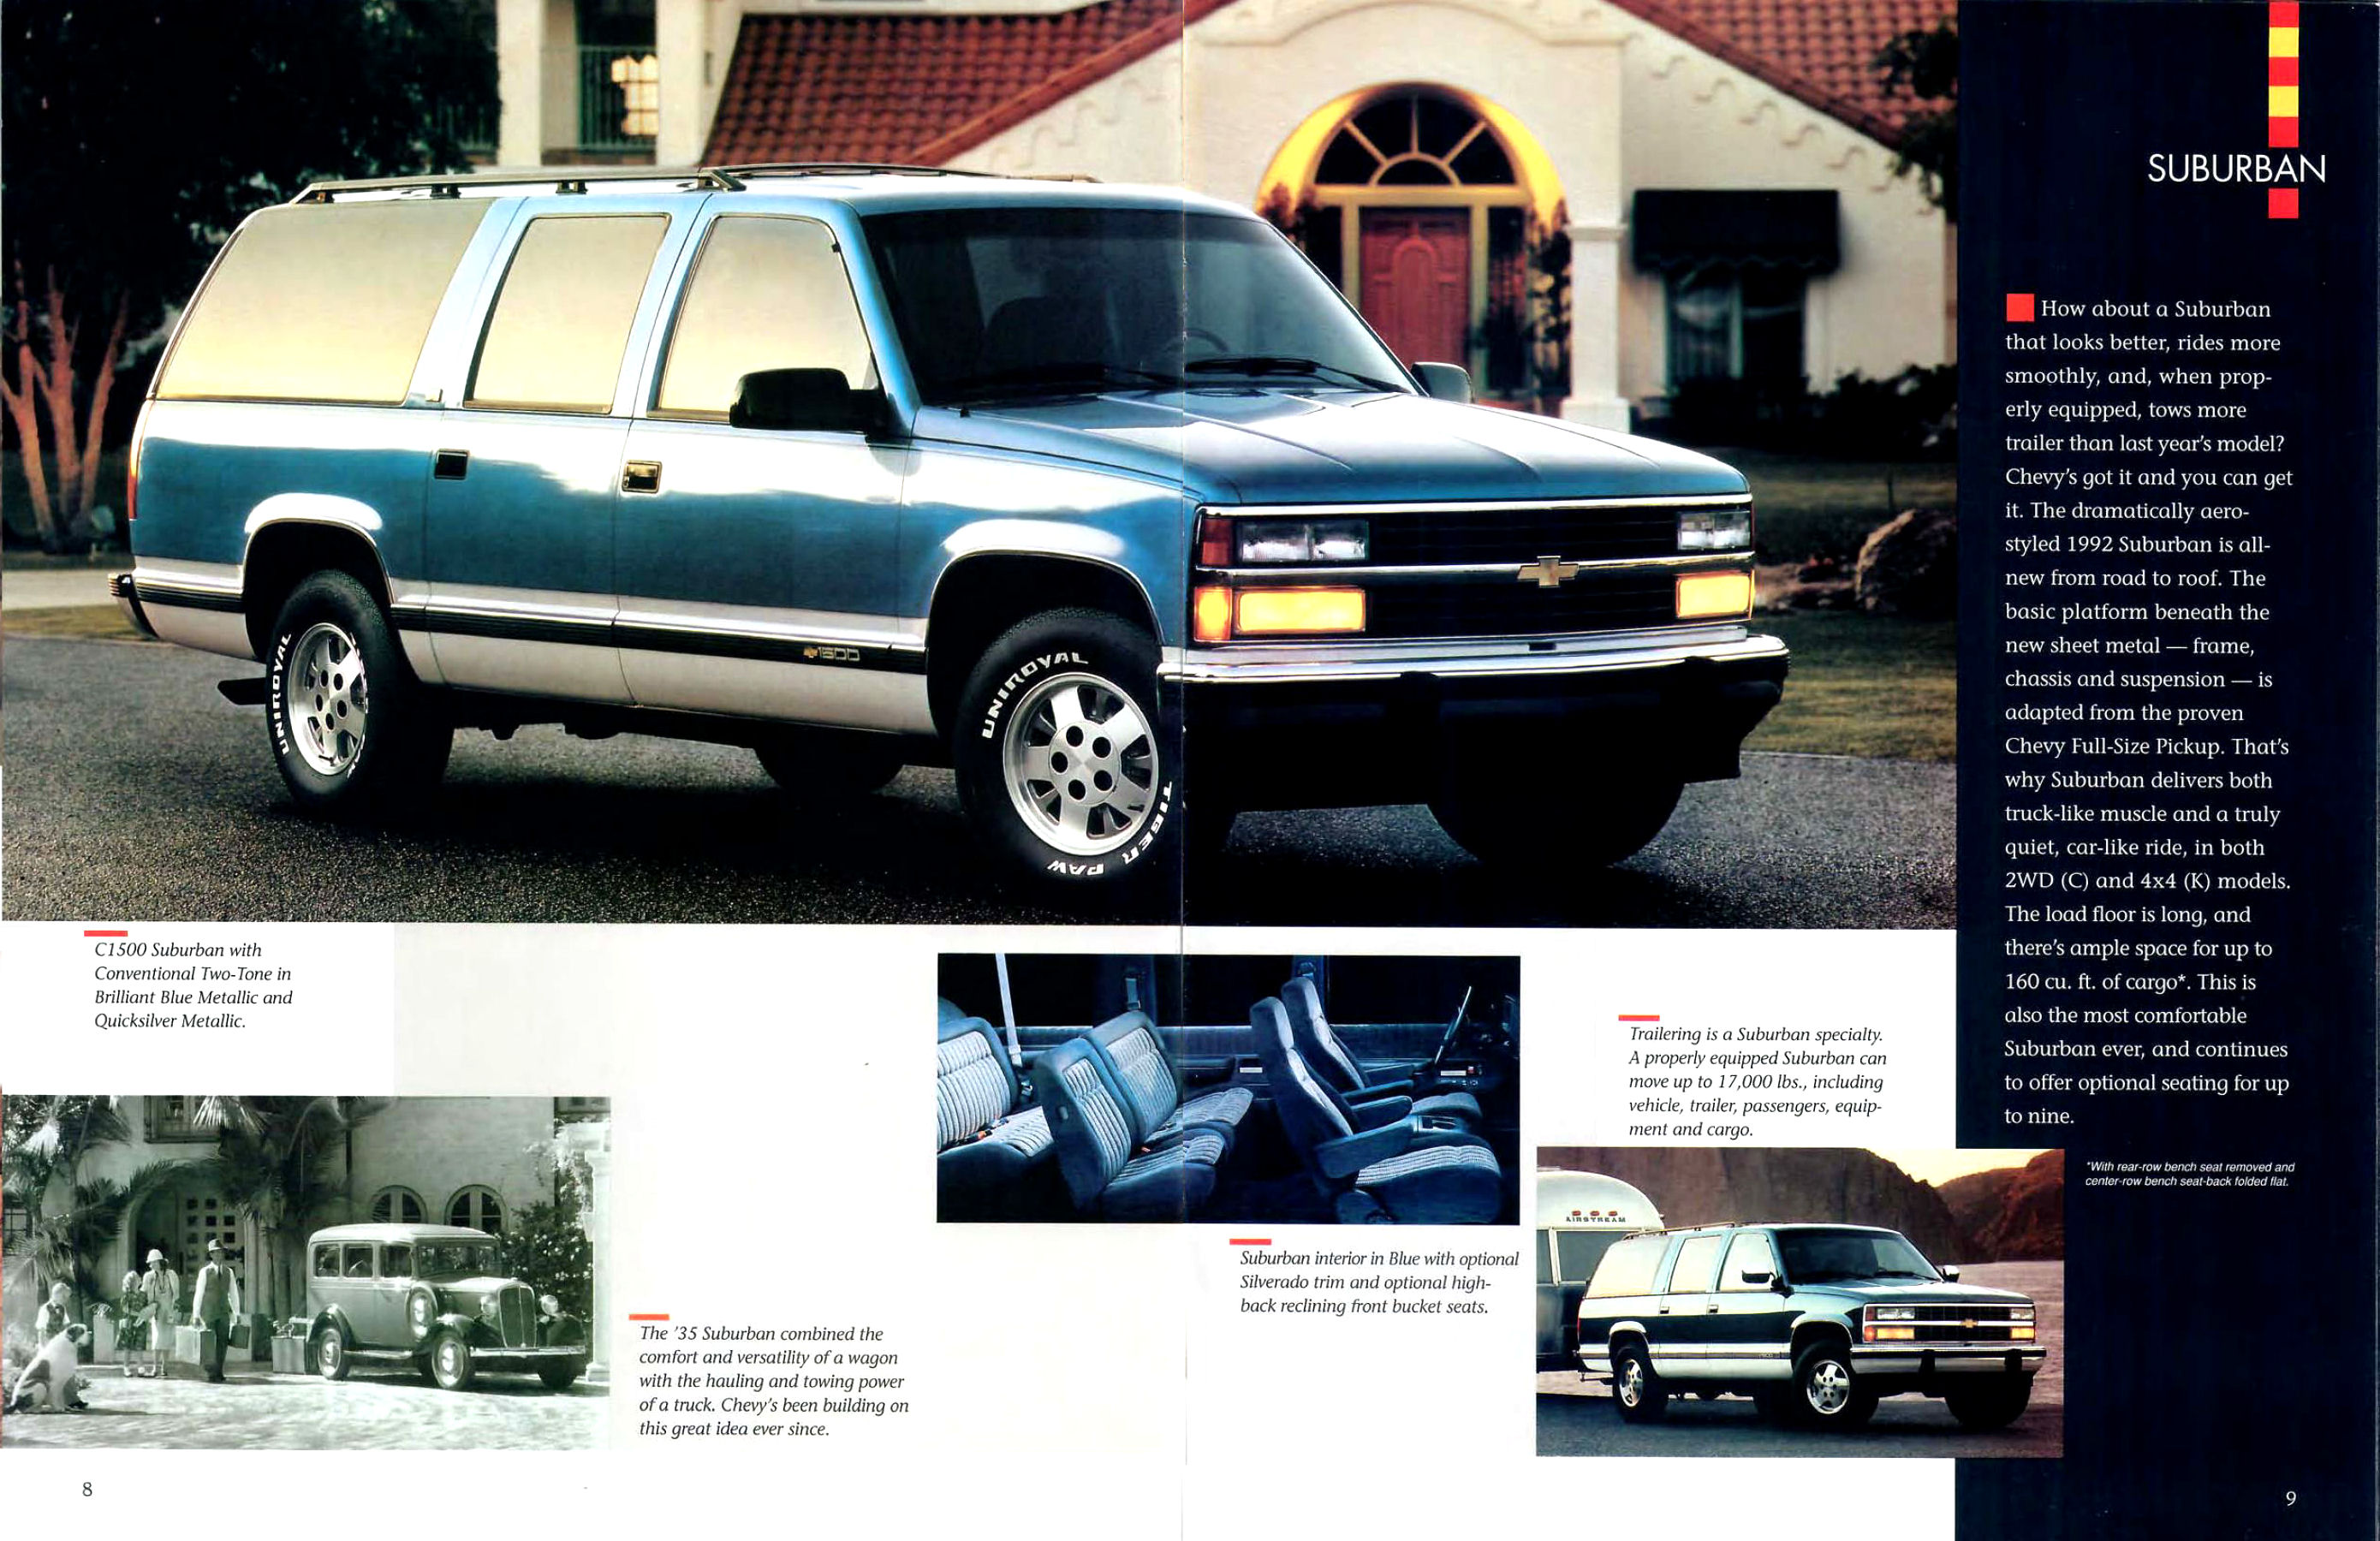 1992 Chevrolet Light Trucks-08-09